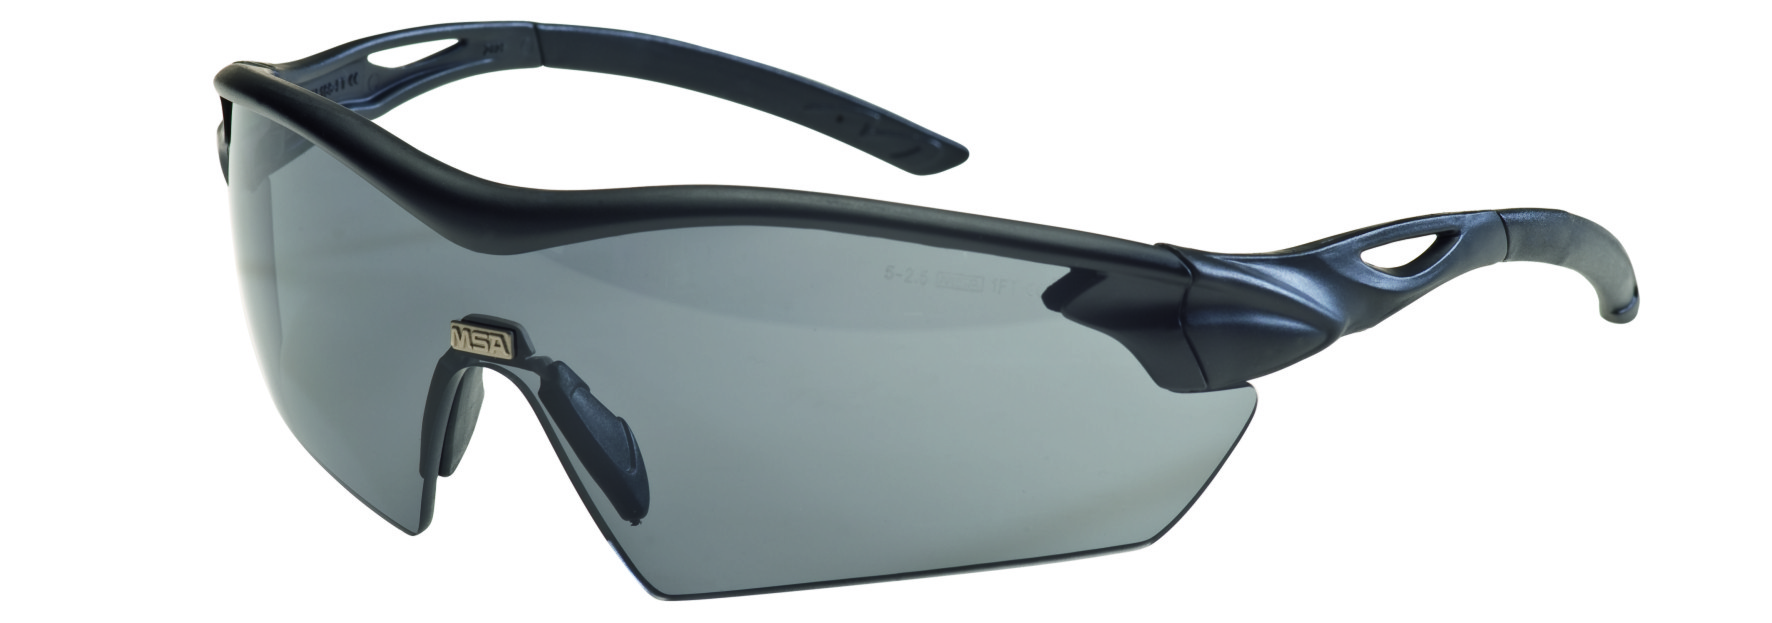 10104617 - Brýle pracovní ochranné MSA RACERS - BLACK/SMOKE